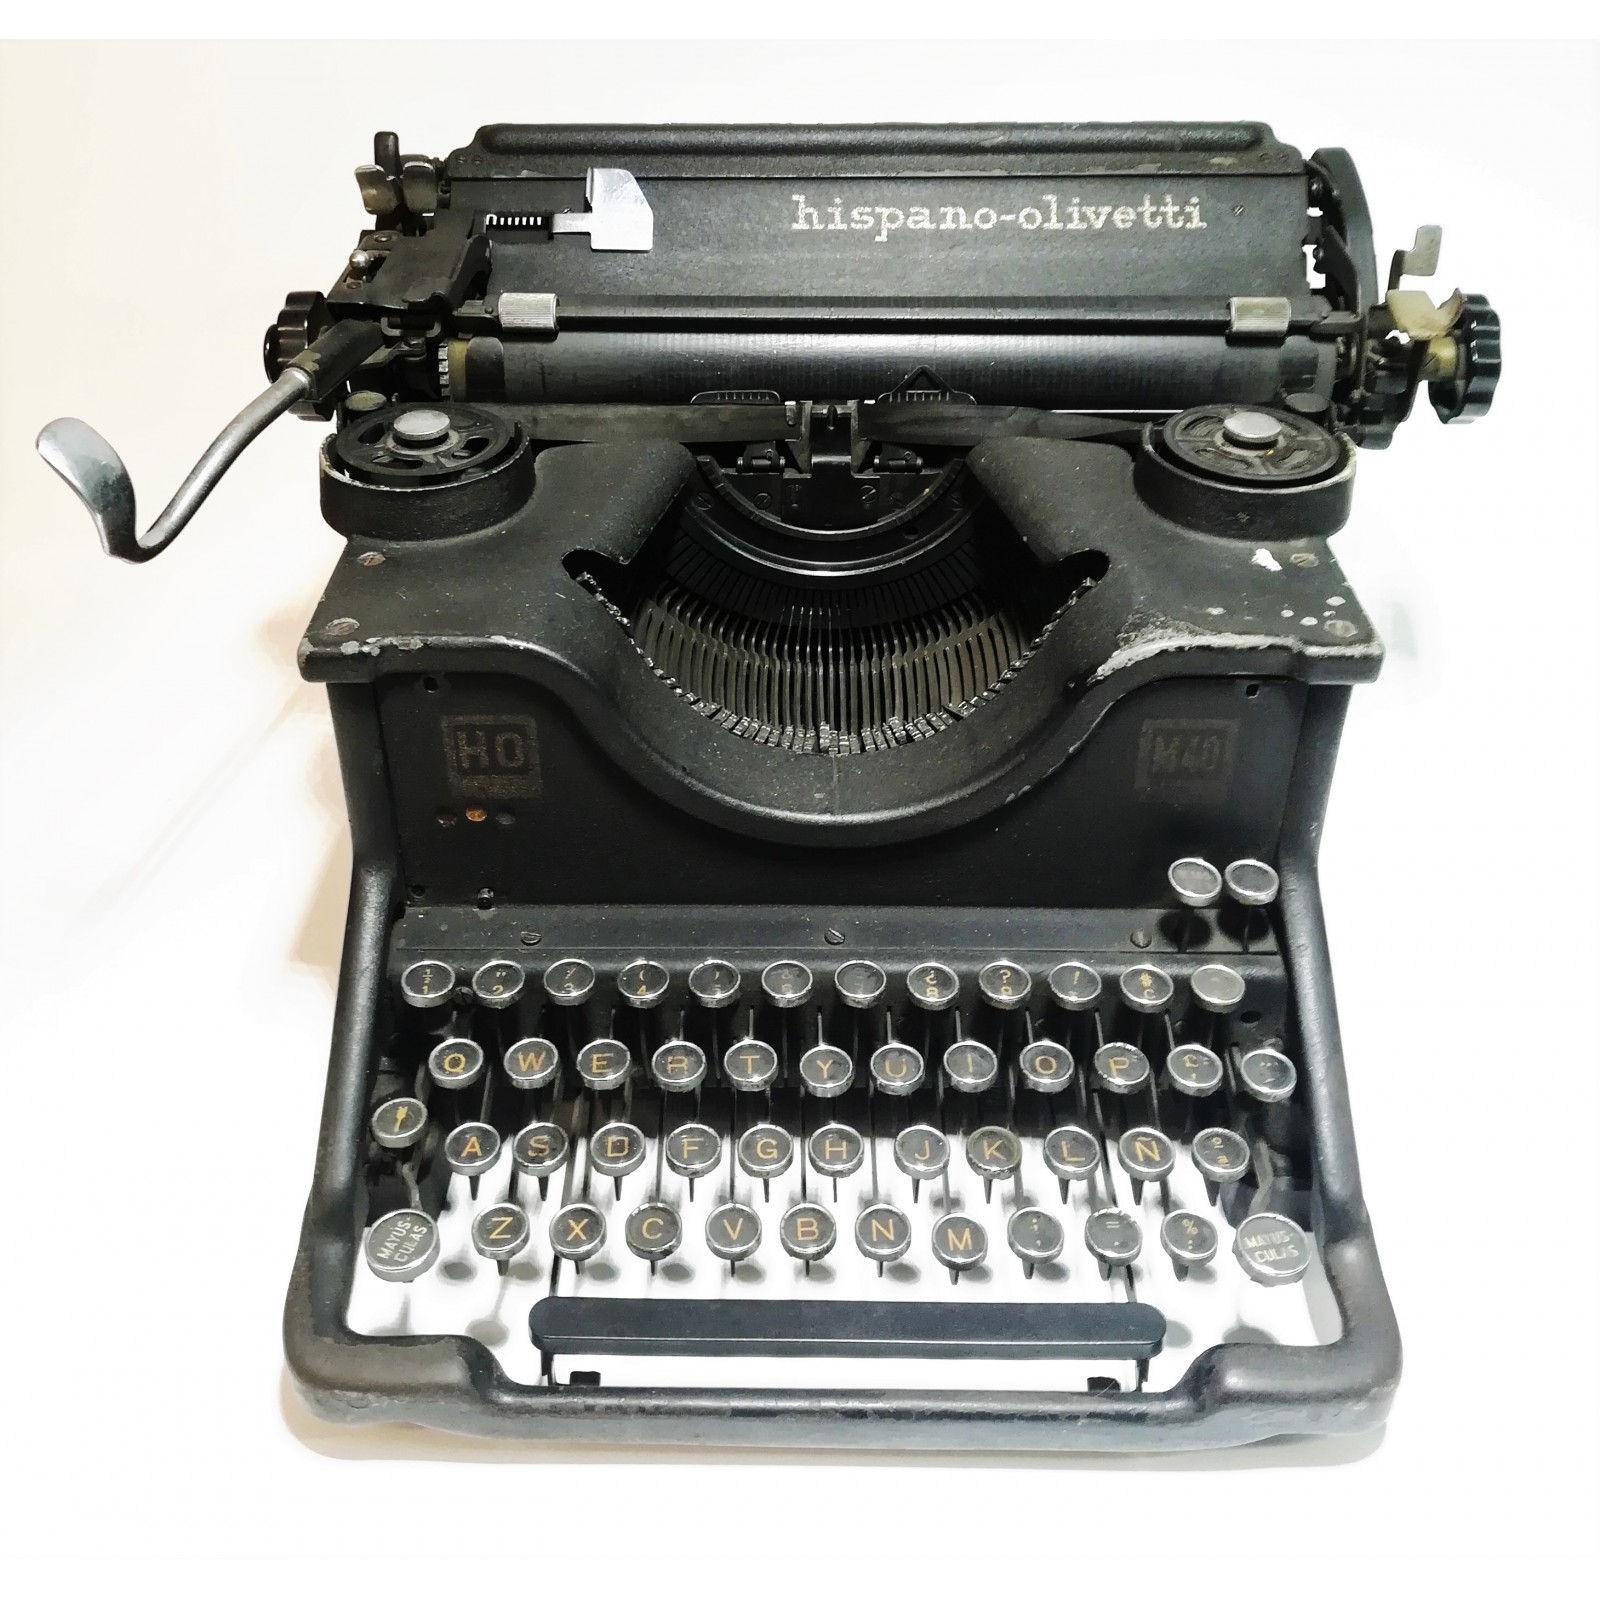 Hundimiento Elucidación Rebaño Máquina de Escribir Hispano Olivetti M40 años 40 de segunda mano